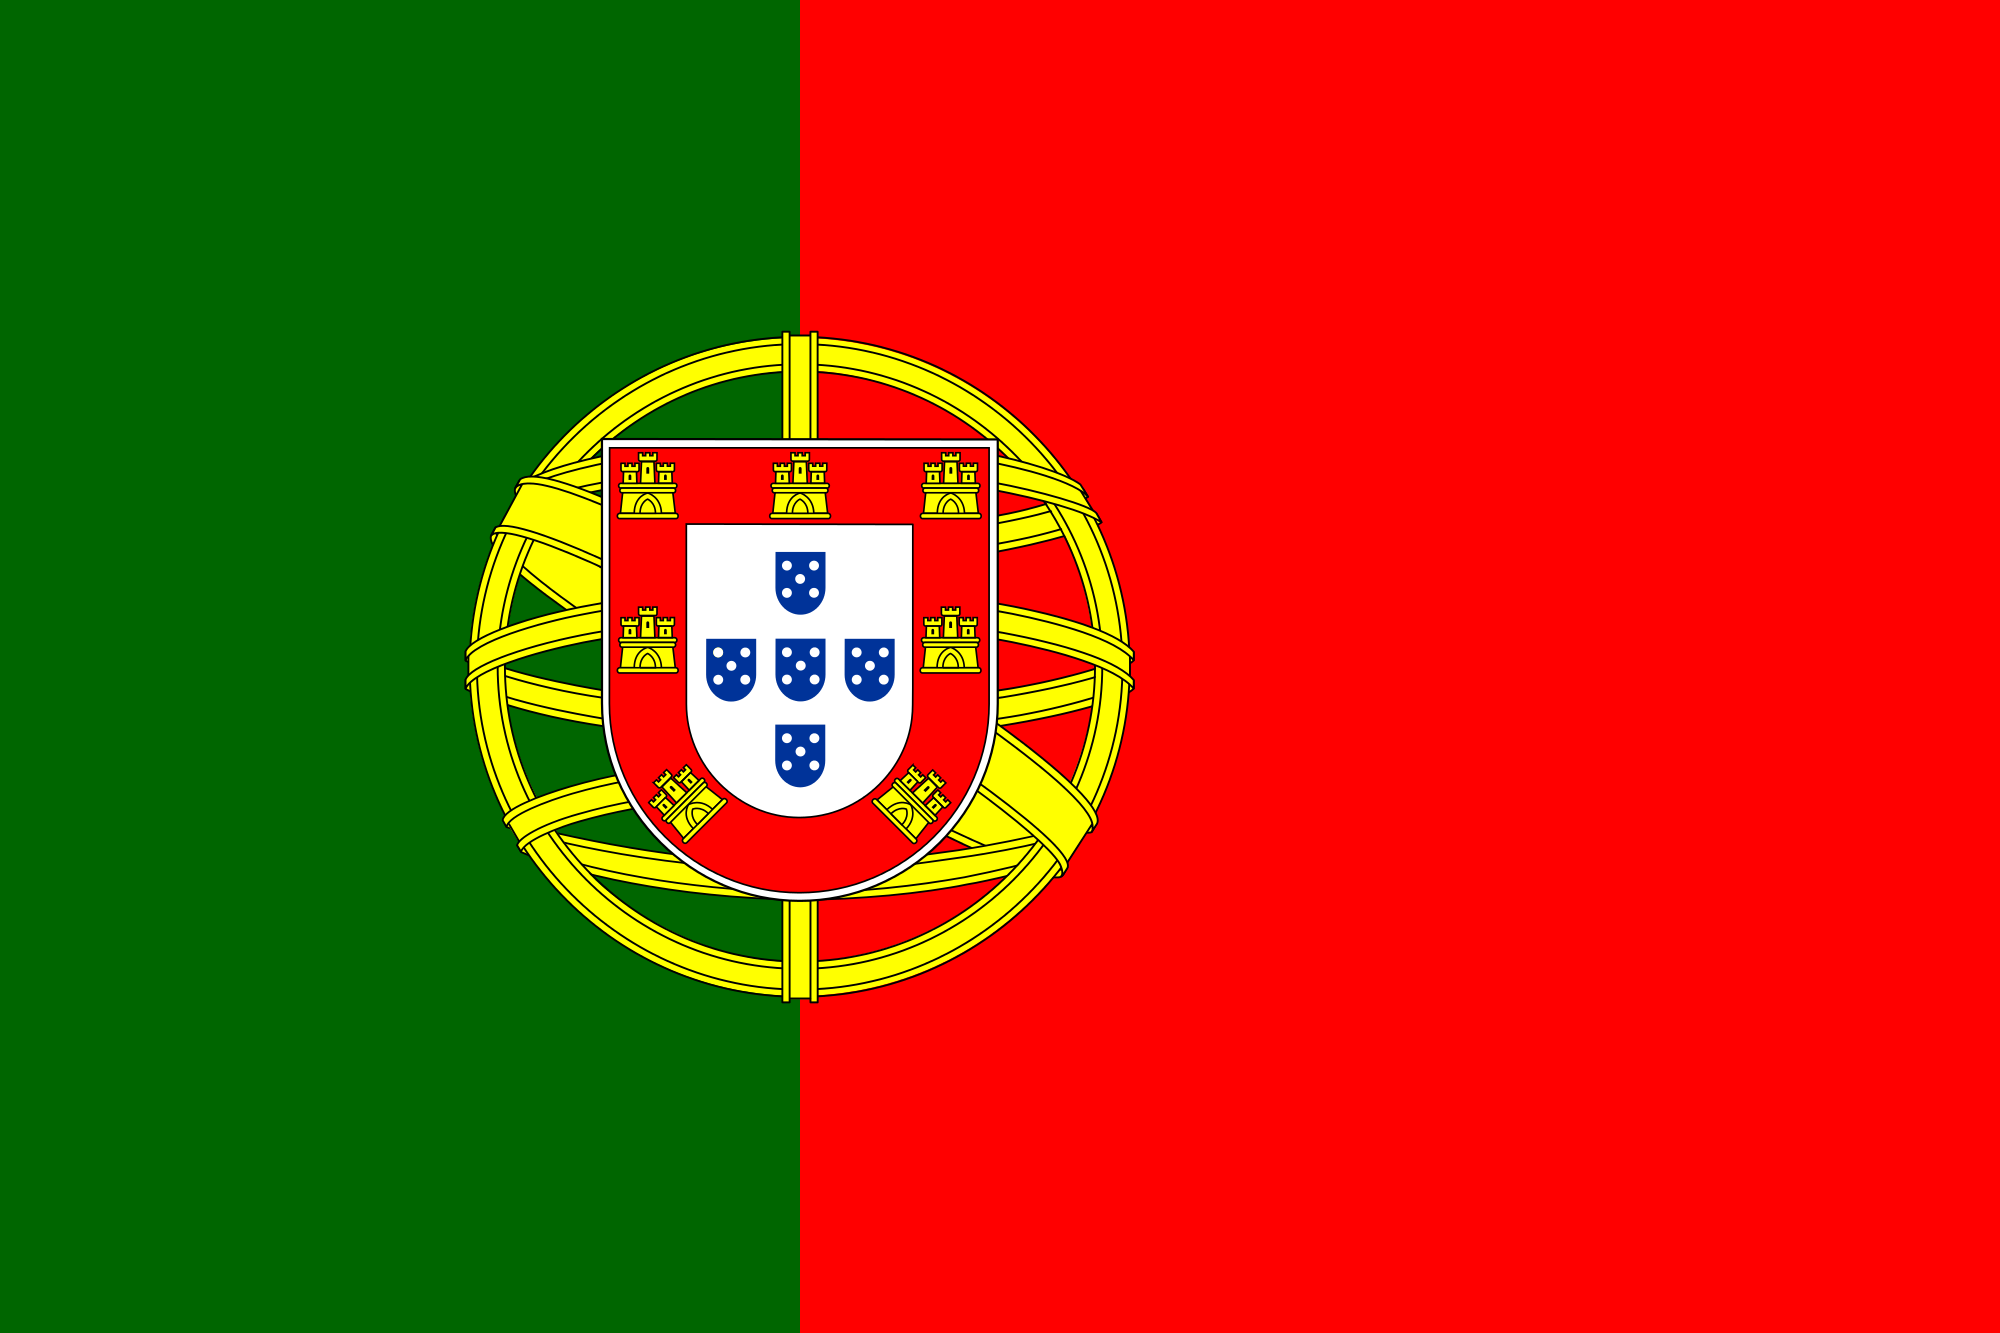 Bandeira de Portugal â€¢ Bandeiras do Mundo